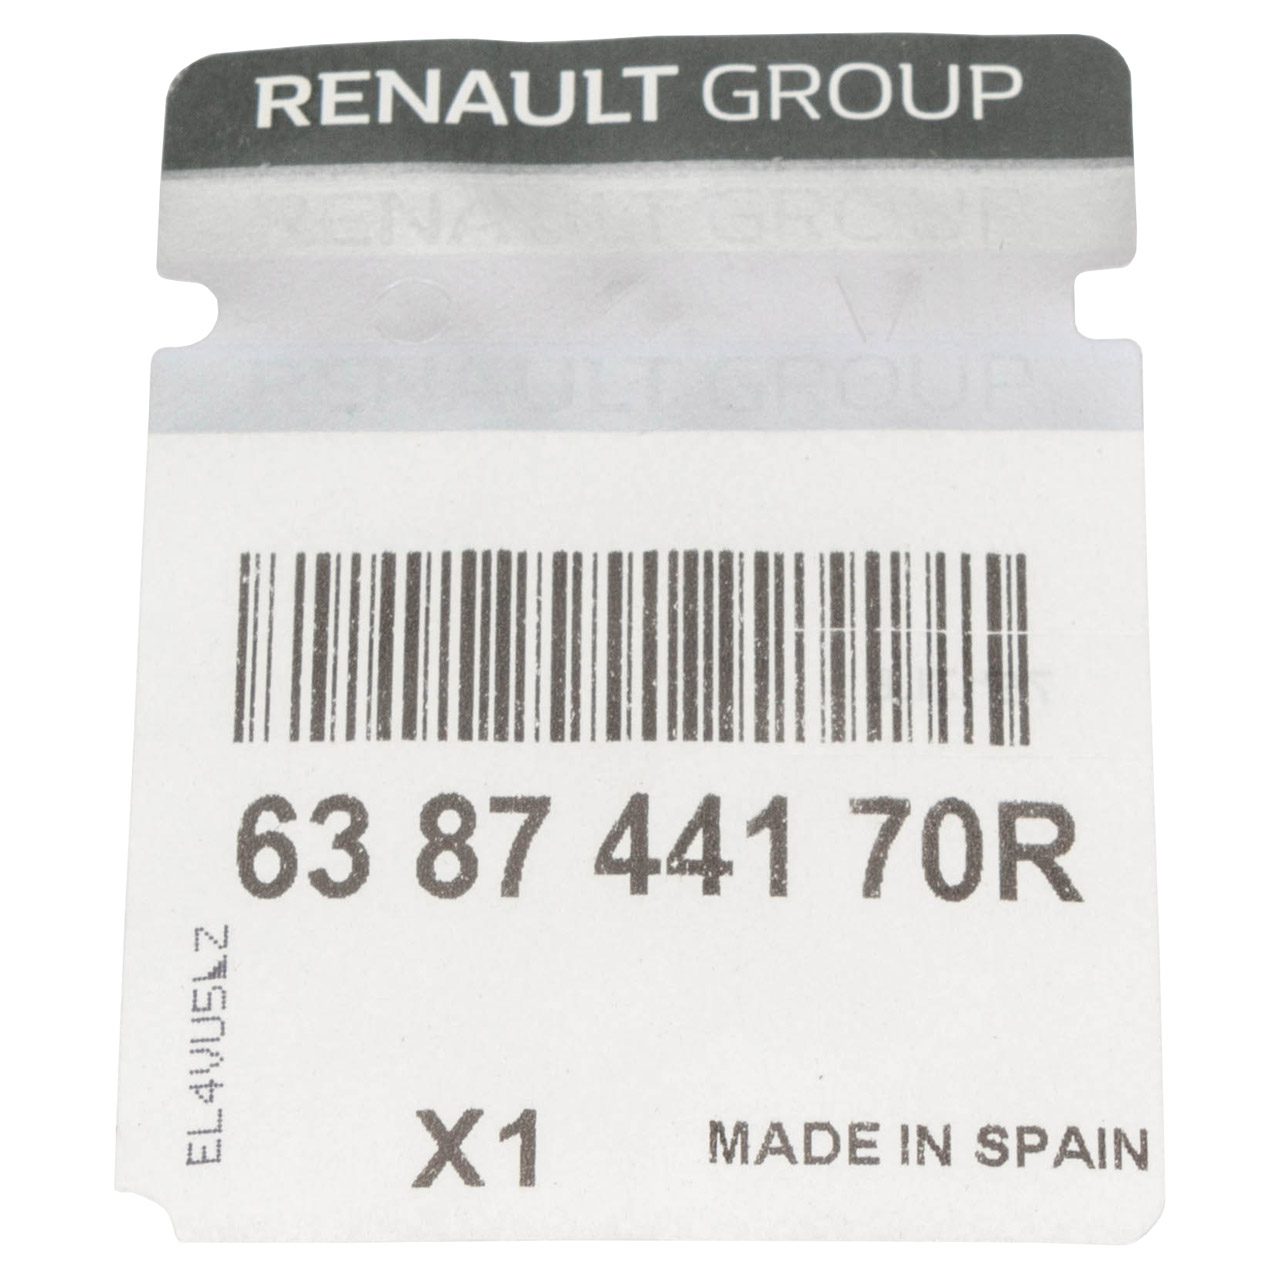 ORIGINAL Renault Verbreiterung Radlauf Kadjar vorne rechts 638744170R